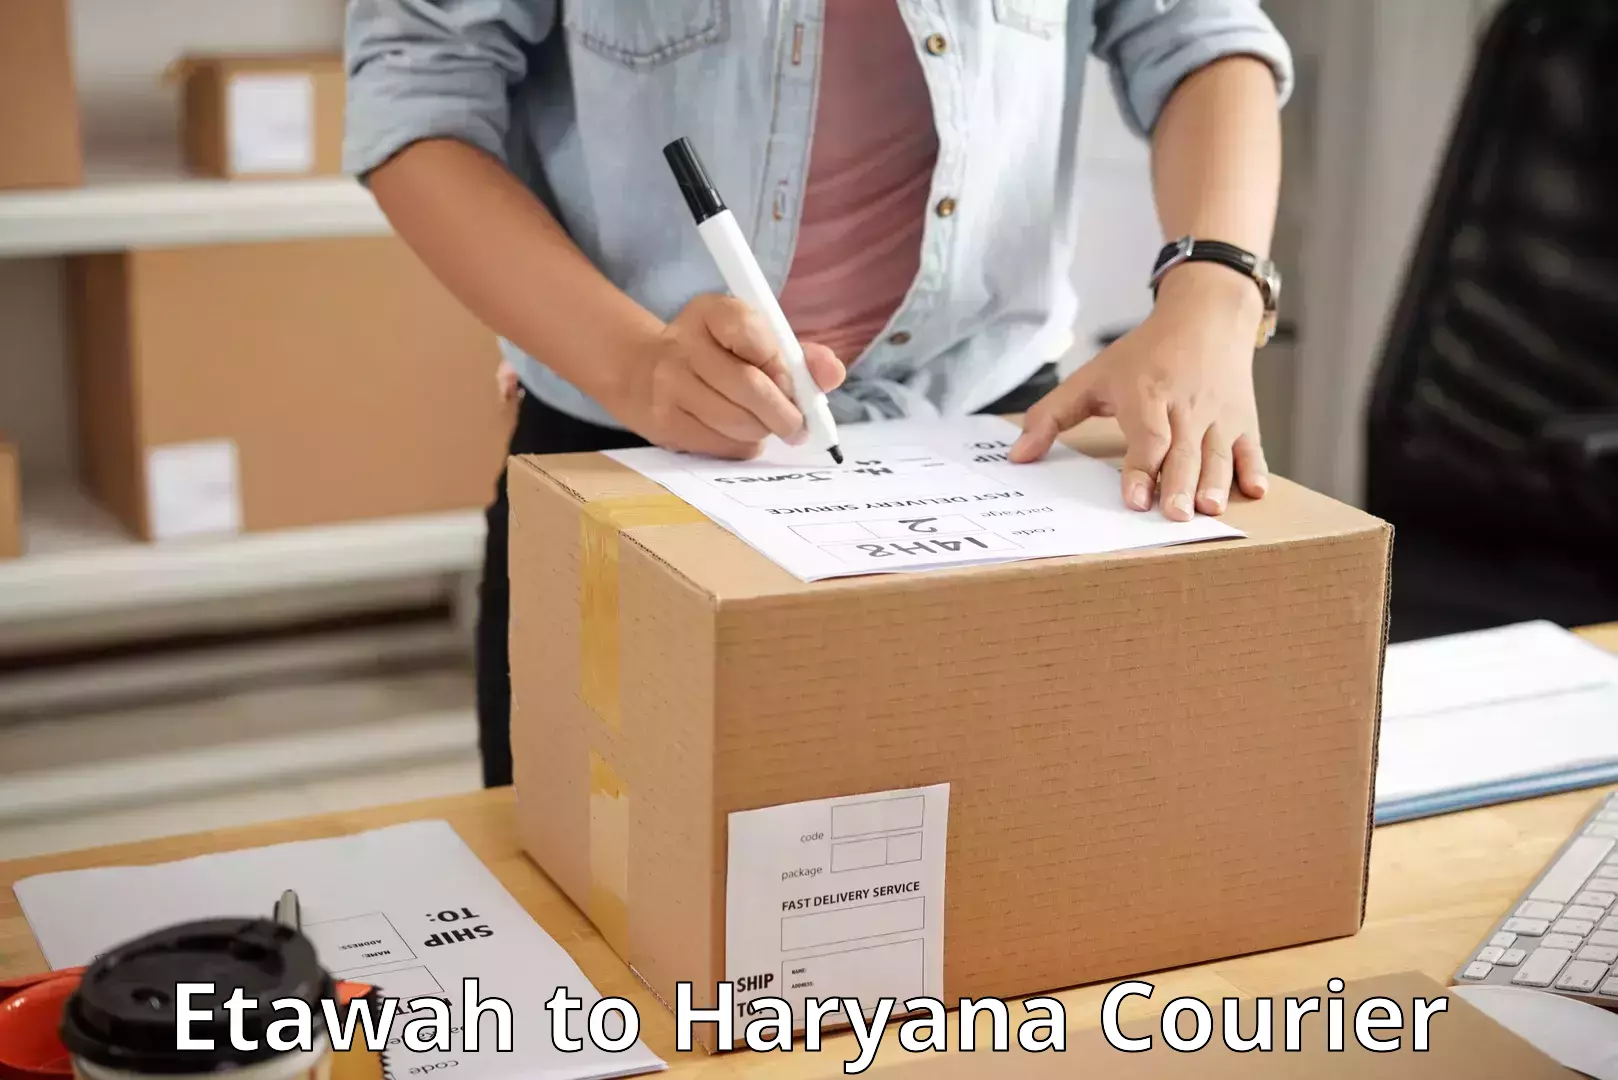 International courier networks Etawah to Rewari